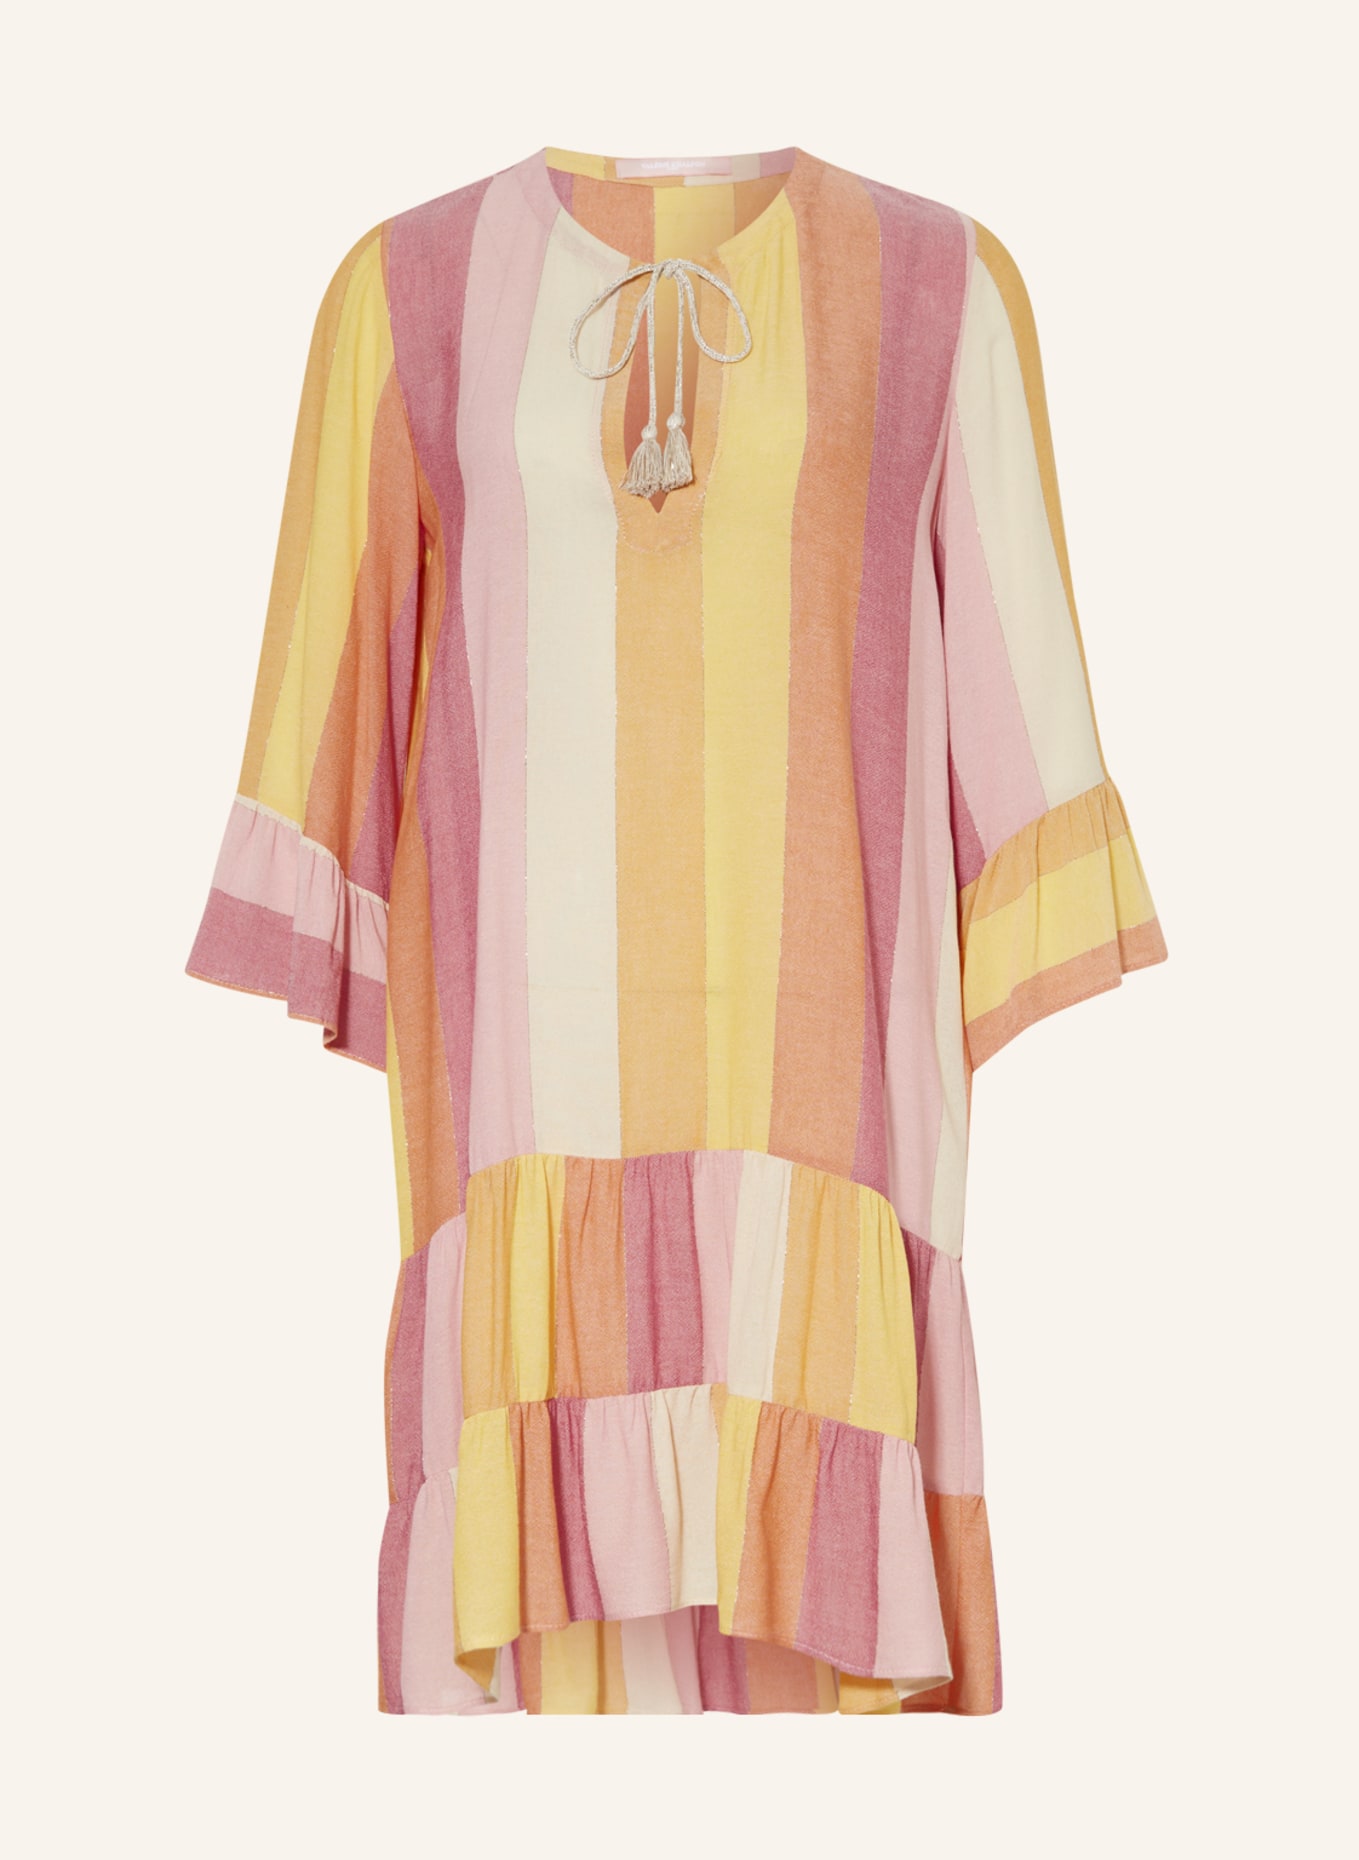 VALÉRIE KHALFON Kleid MONTANA mit 3/4-Arm und Glanzgarn, Farbe: ROSA/ HELLORANGE/ GELB (Bild 1)